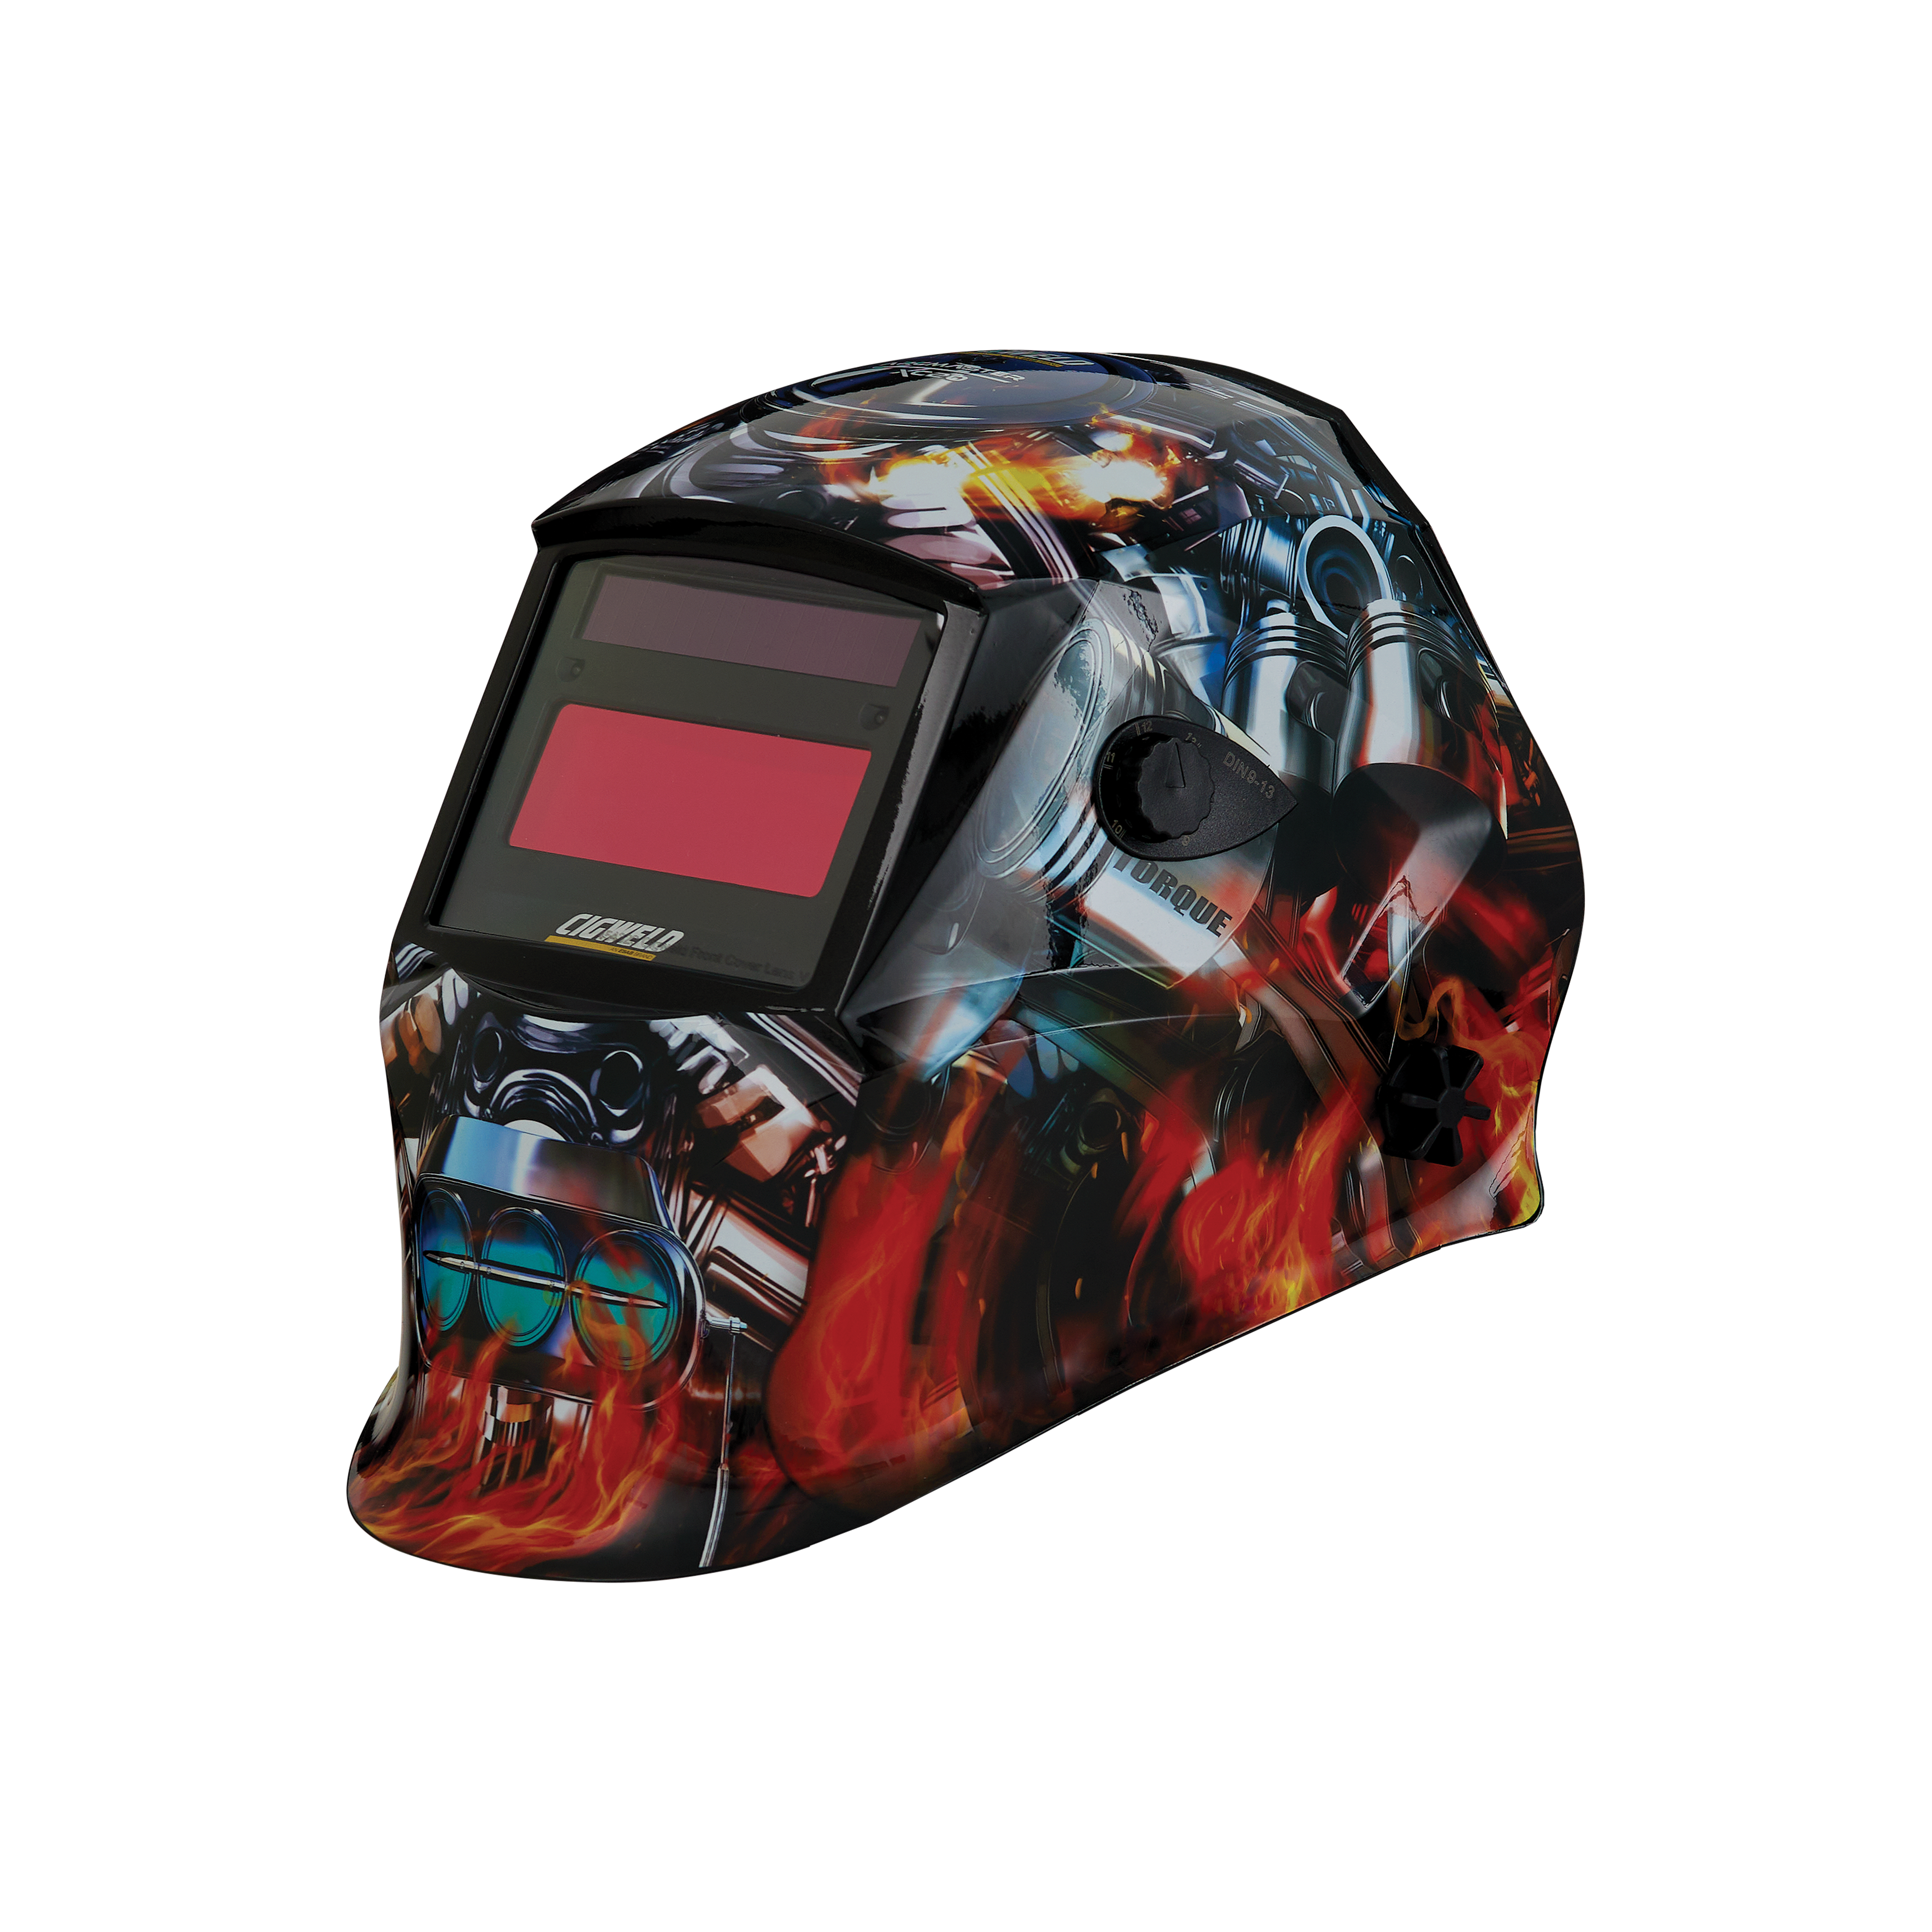 Cigweld Arcmaster XC20 Torque Welding Helmet